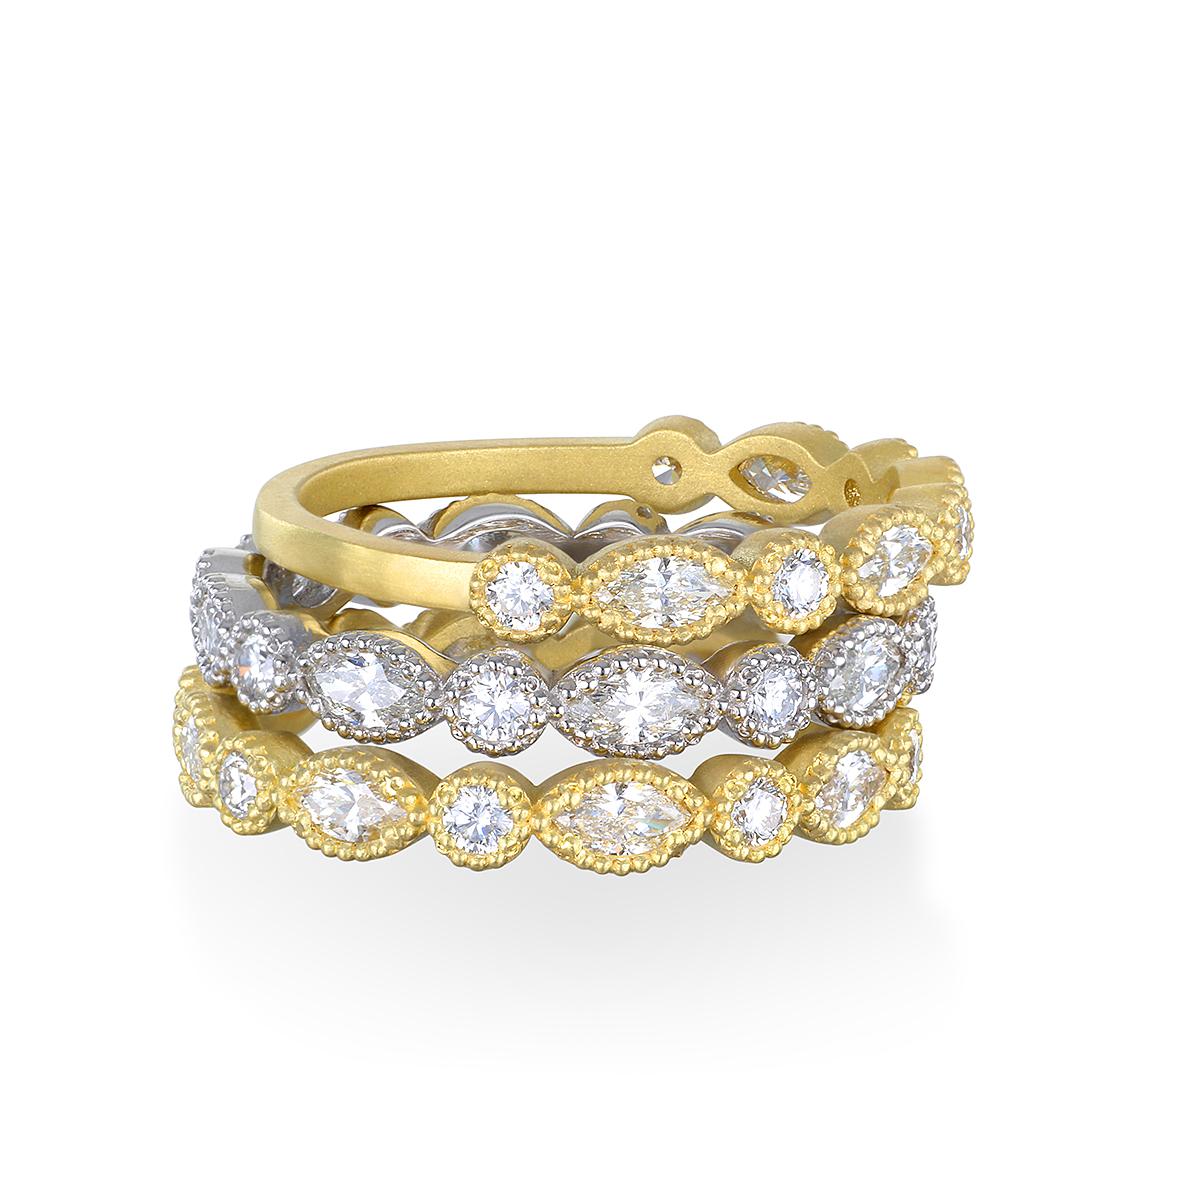 Das 18 Karat Gold Marquise/Round Diamond Eternity Band von Faye Kim kann alleine oder gestapelt getragen werden und ist eine großartige Ergänzung zu Ihrer Schmucksammlung. 

Klassisches Ewigkeitsarmband mit Milgrain-Kante. Die strahlend weißen